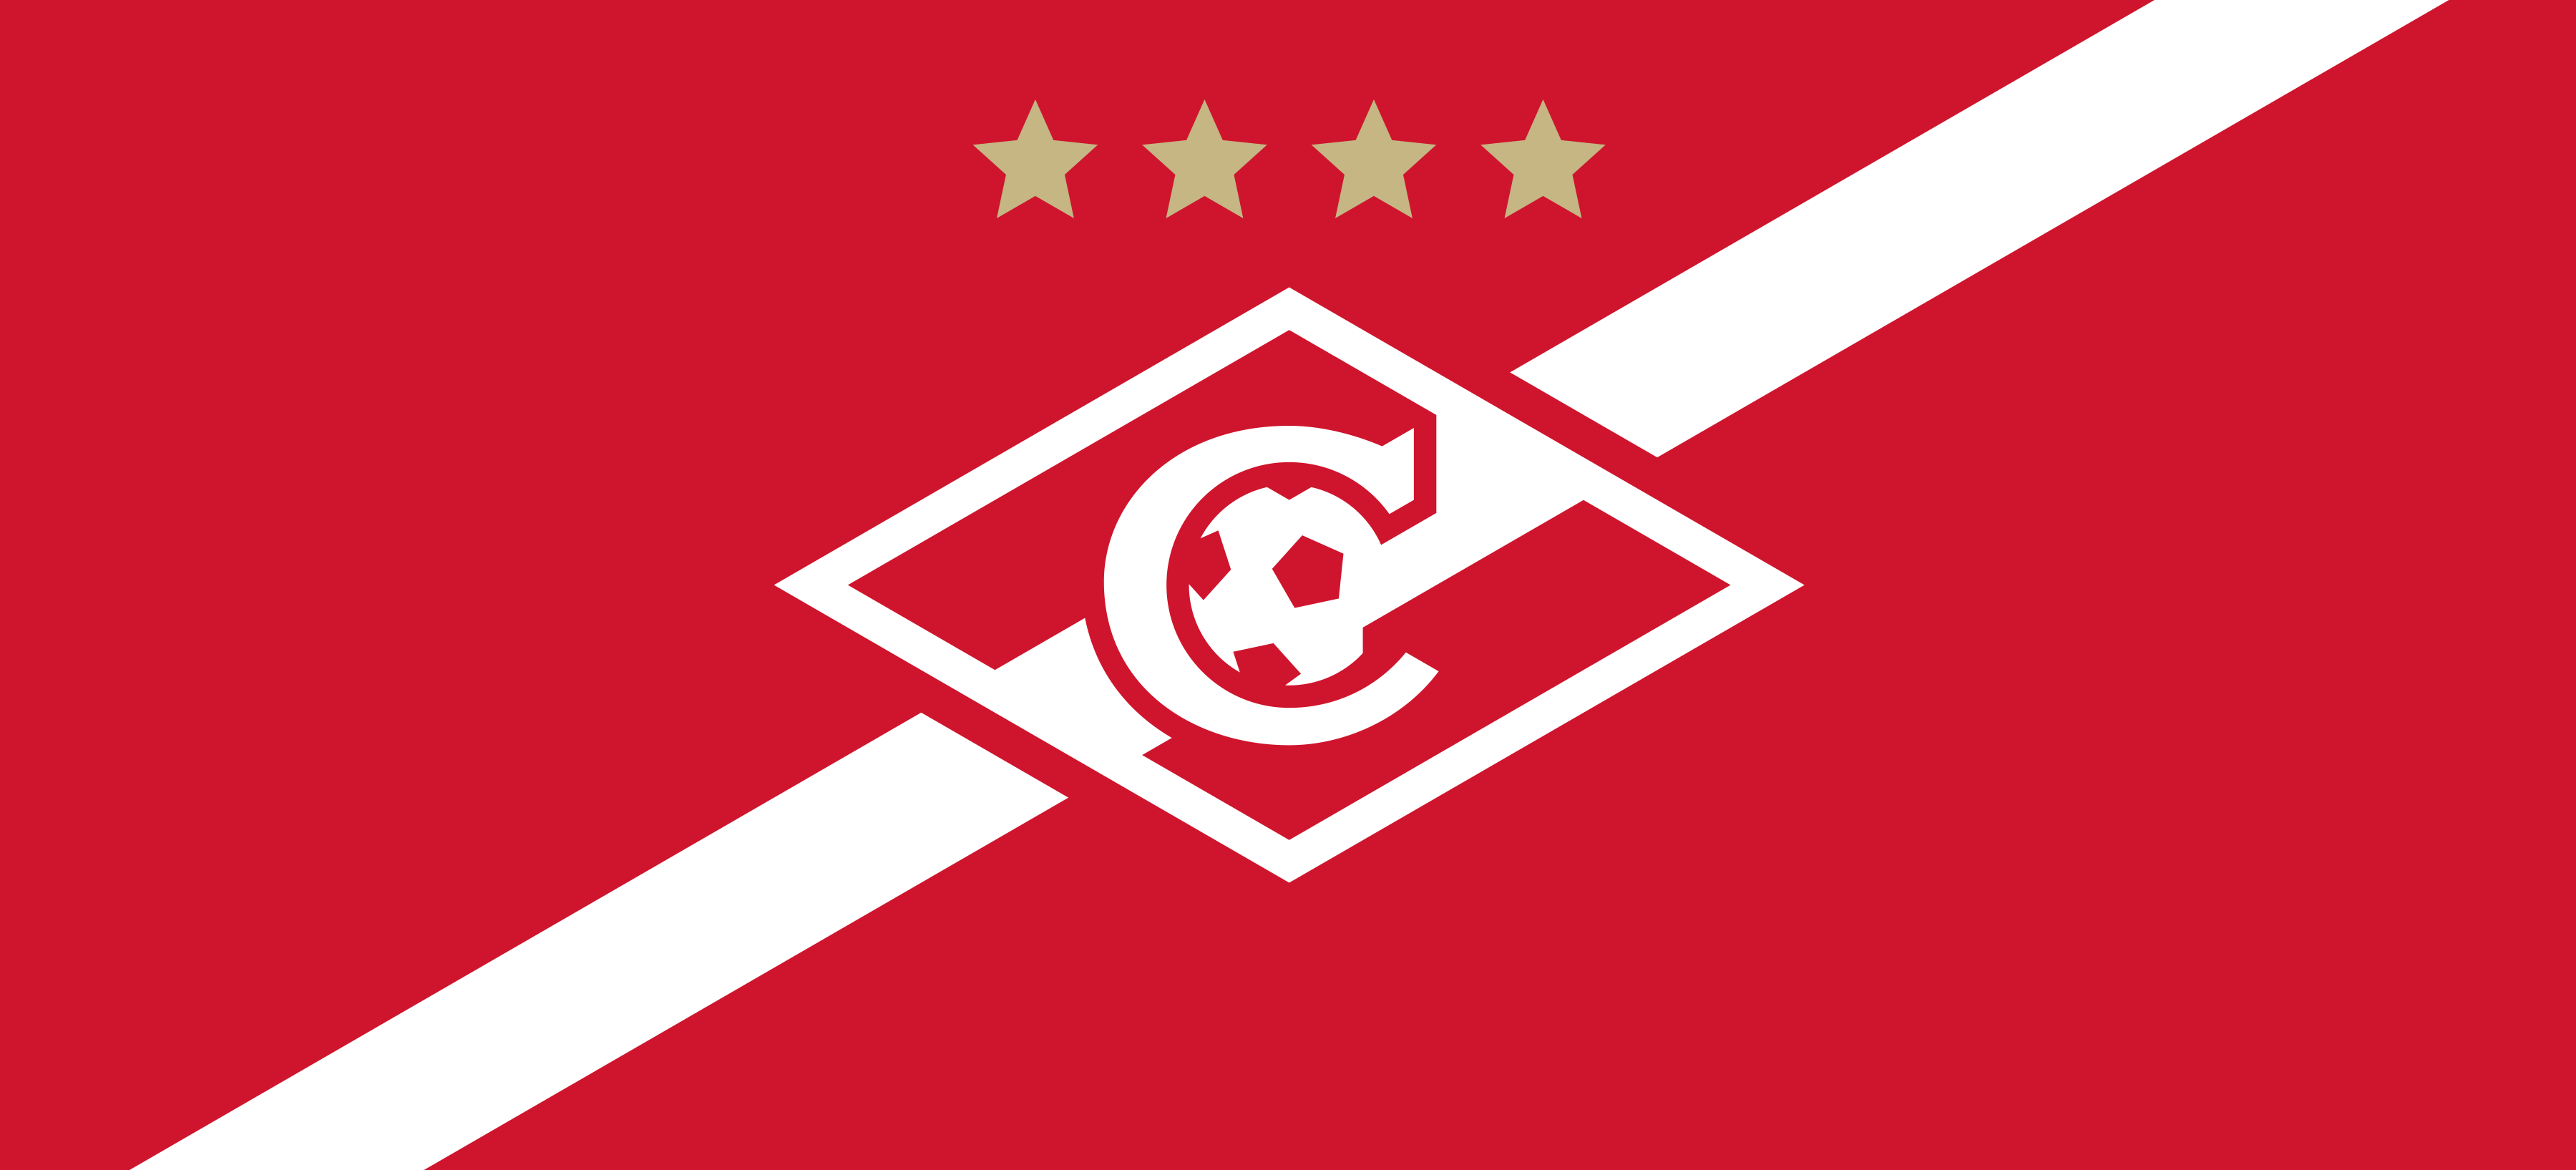 эмблема спартака футбольный клуб